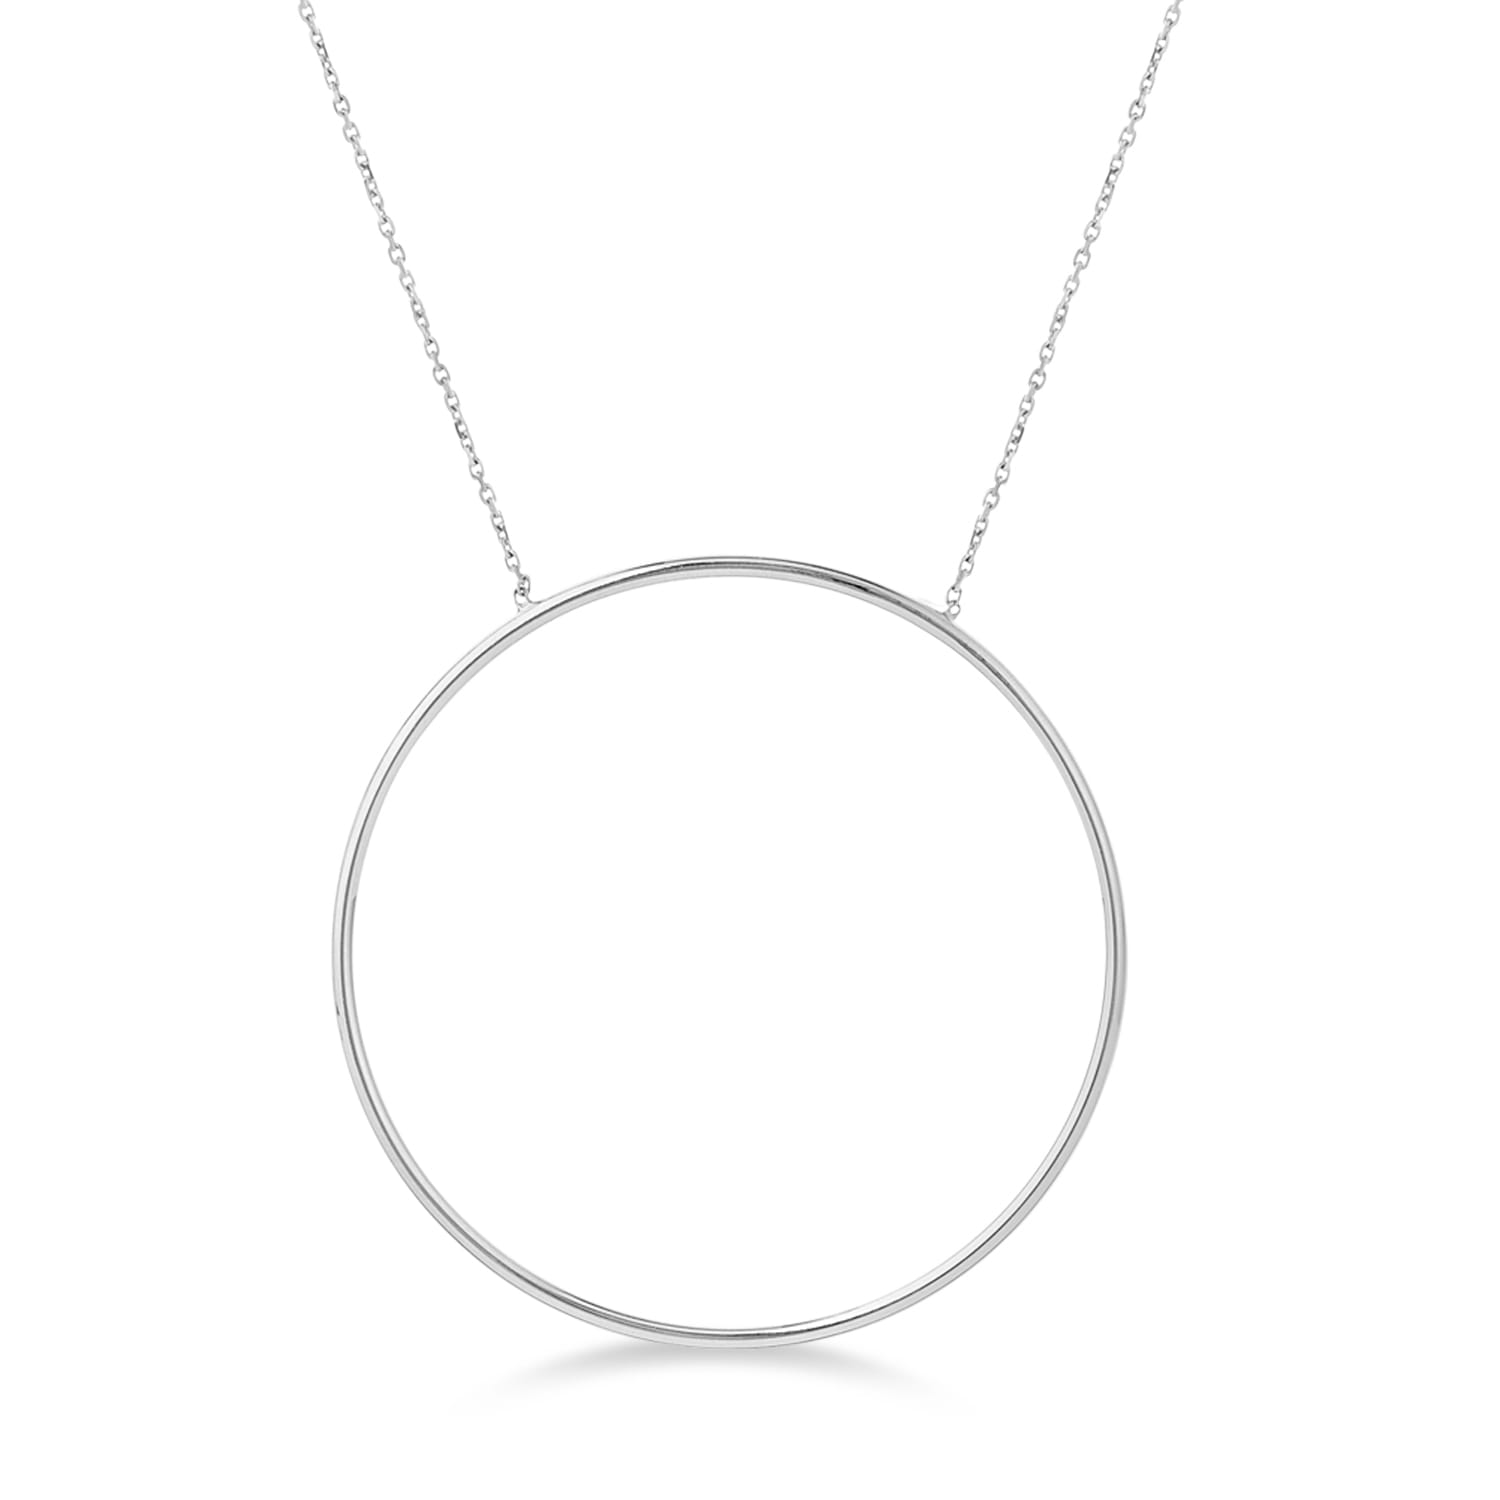 Extra Large Circle Pendant Necklace 14k White Gold